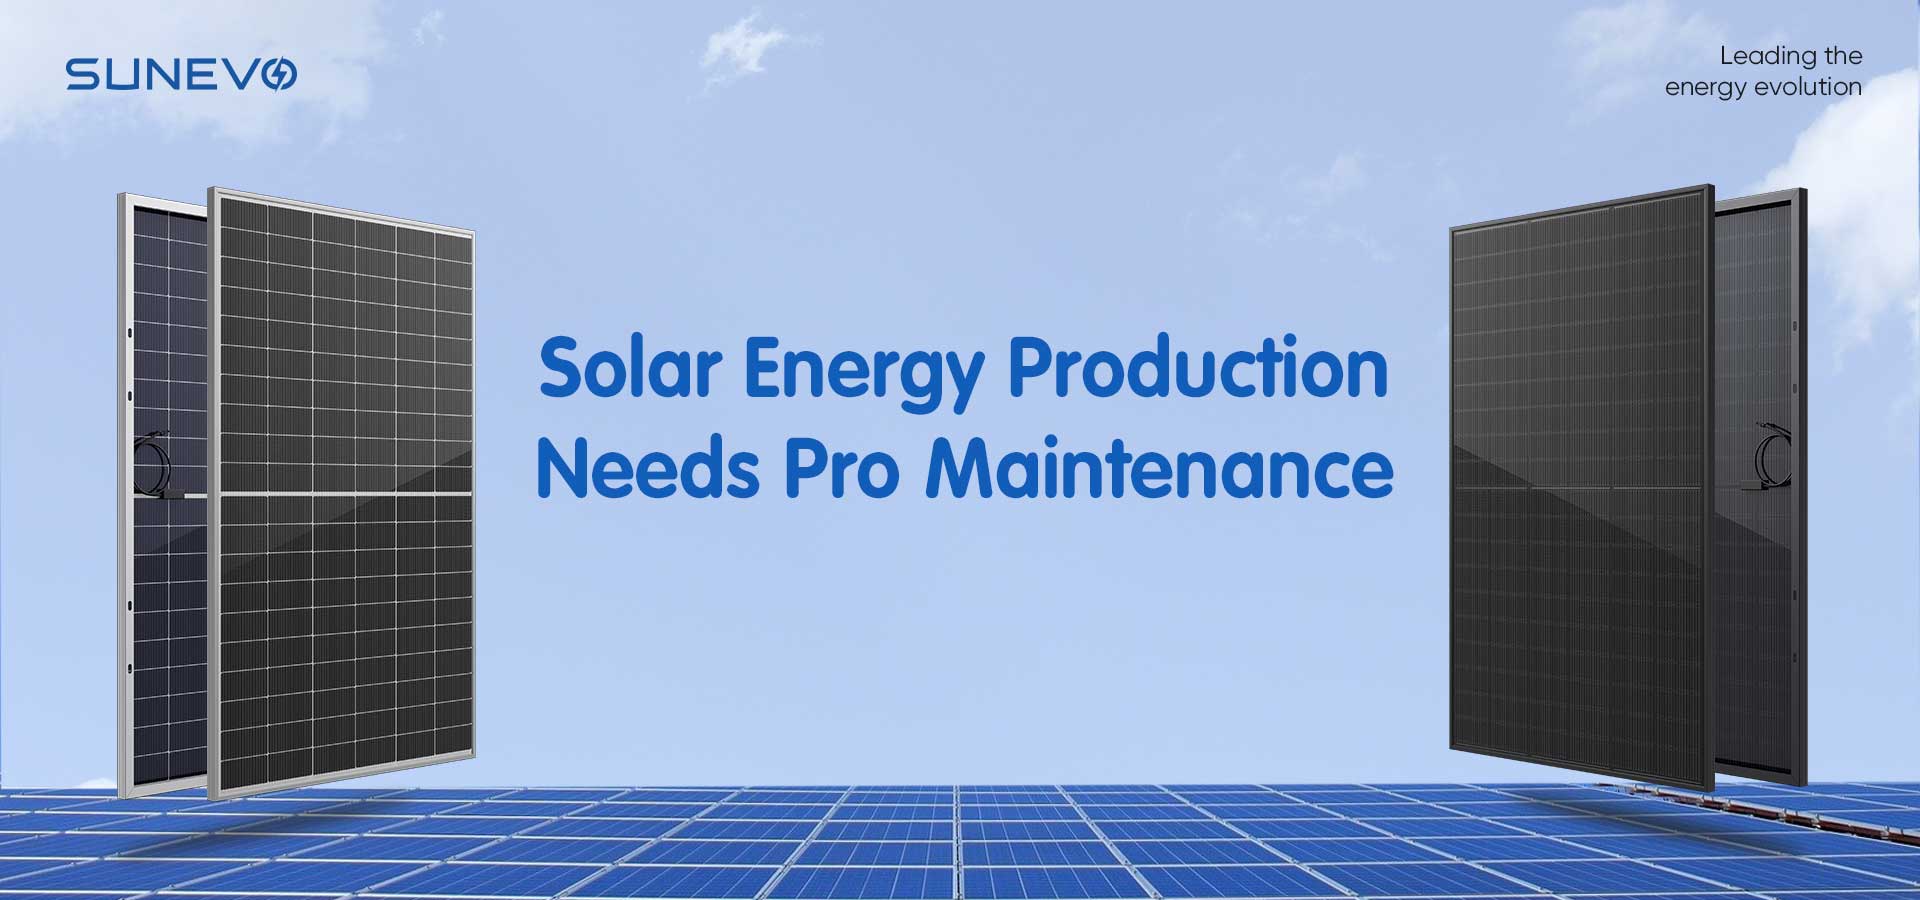 Tirez parti de la maintenance professionnelle pour une création optimale d’énergie solaire